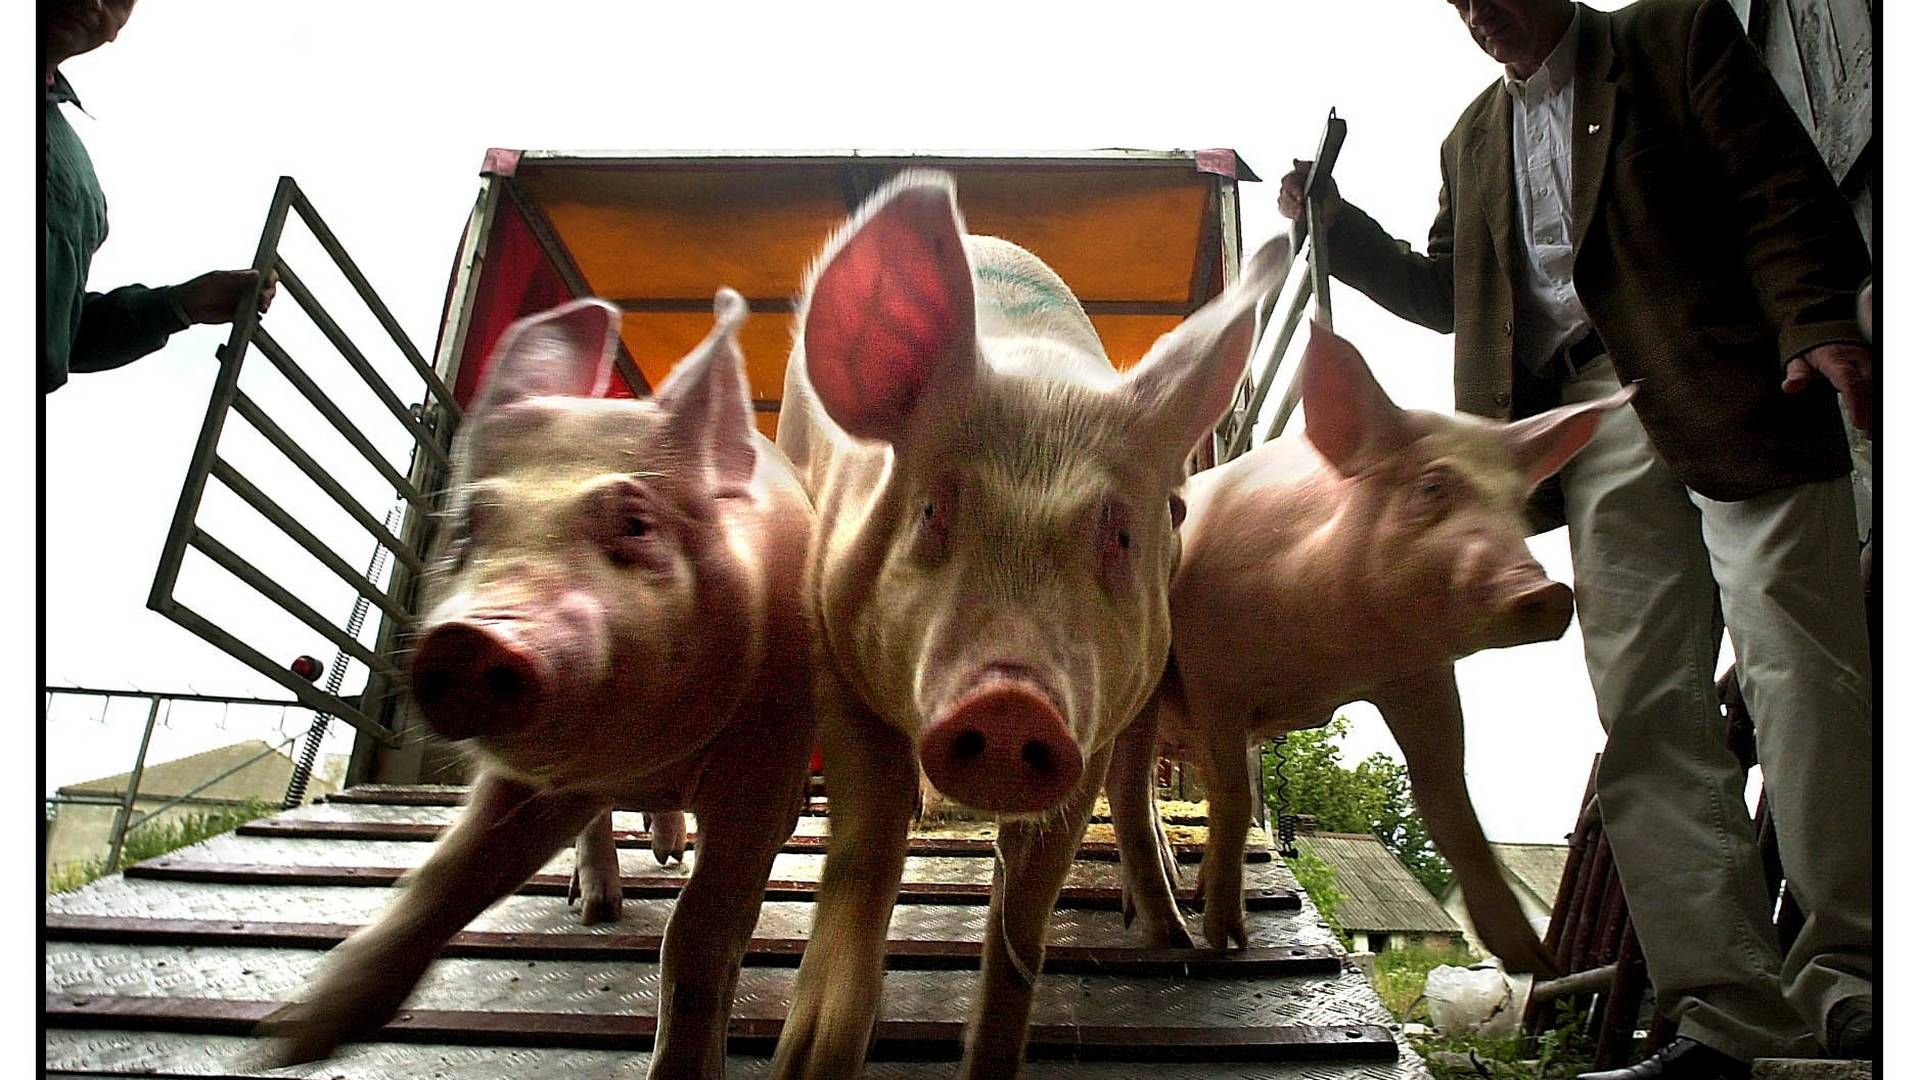 Endnu er begrænsningerne på transport og hold af svin i beskyttelseszoner ikke kendte. Sverige har dog ingen milliardeksport, der er i fare som følge af ASF-udbruddet. | Foto: Jesper Nørgaard Sørensen